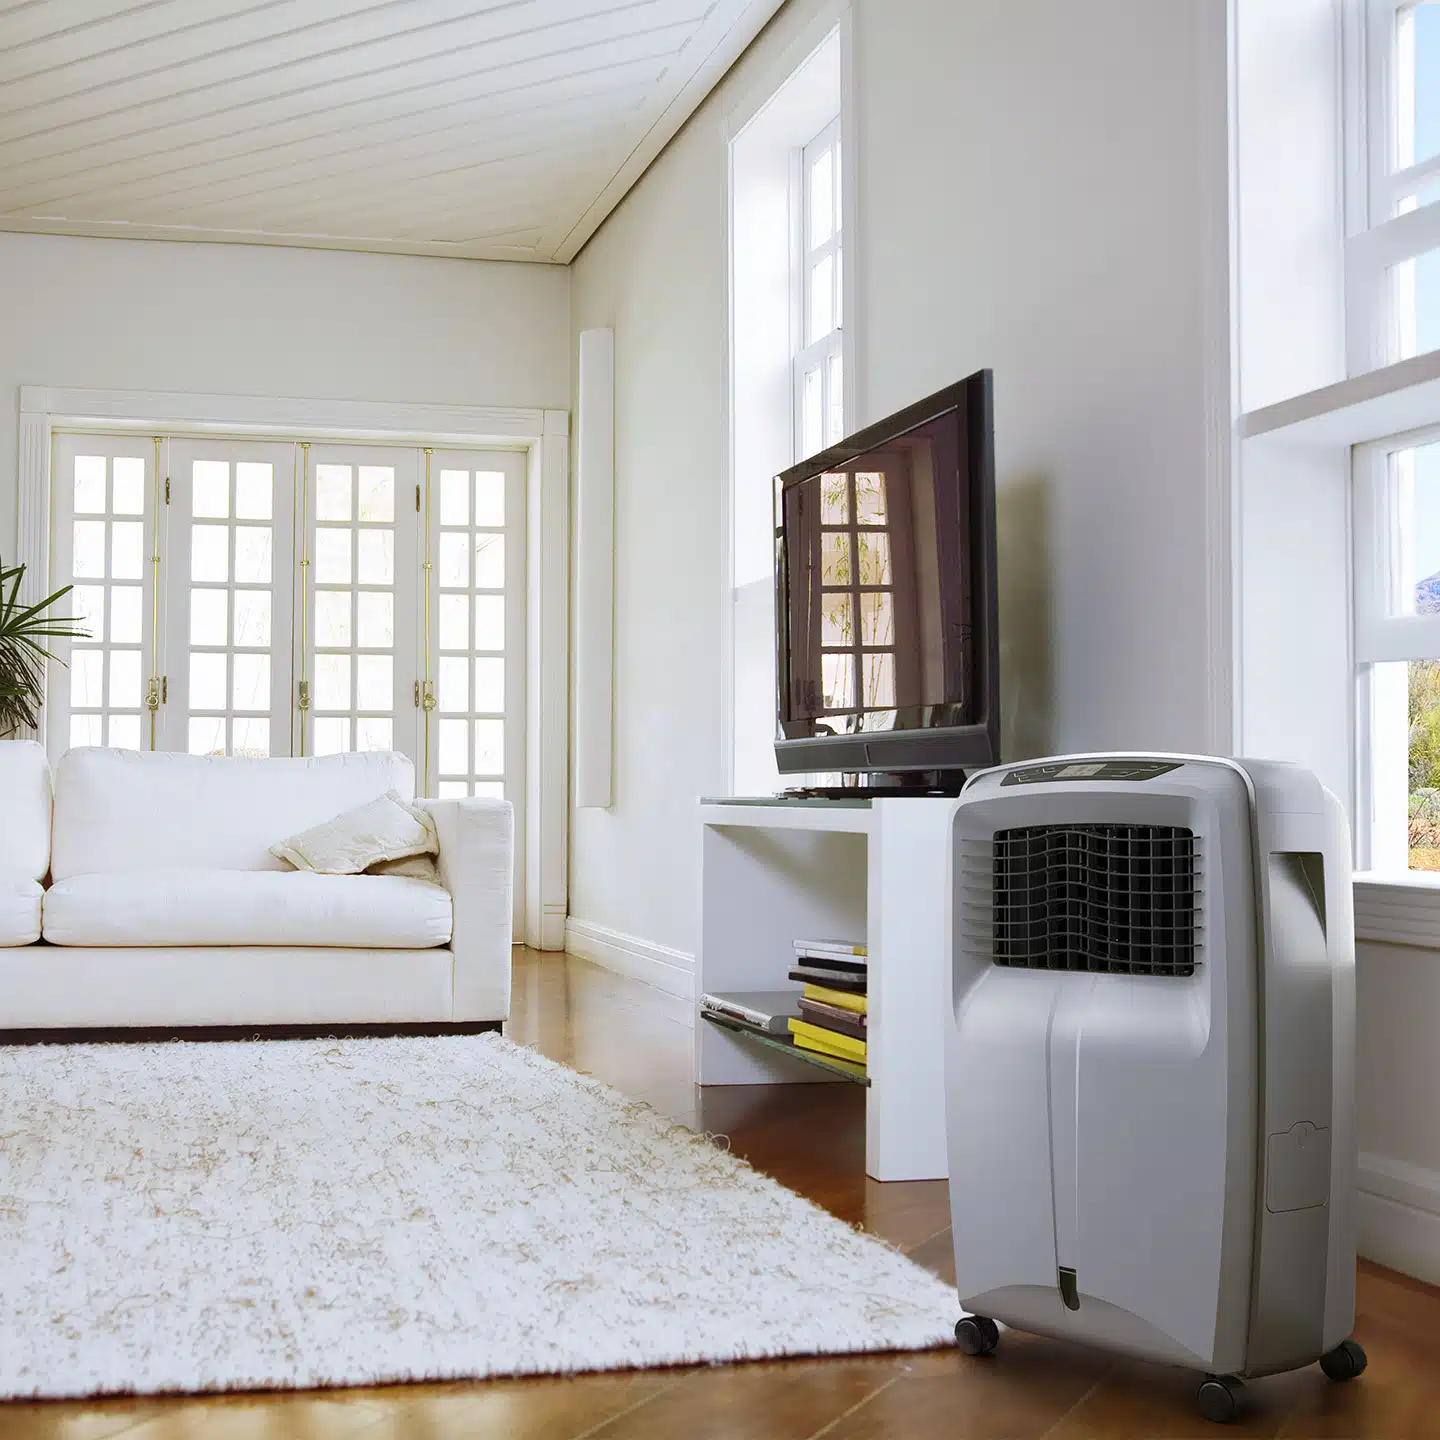 Pour votre maison, pensez à investir dans un rafraîchisseur d’air